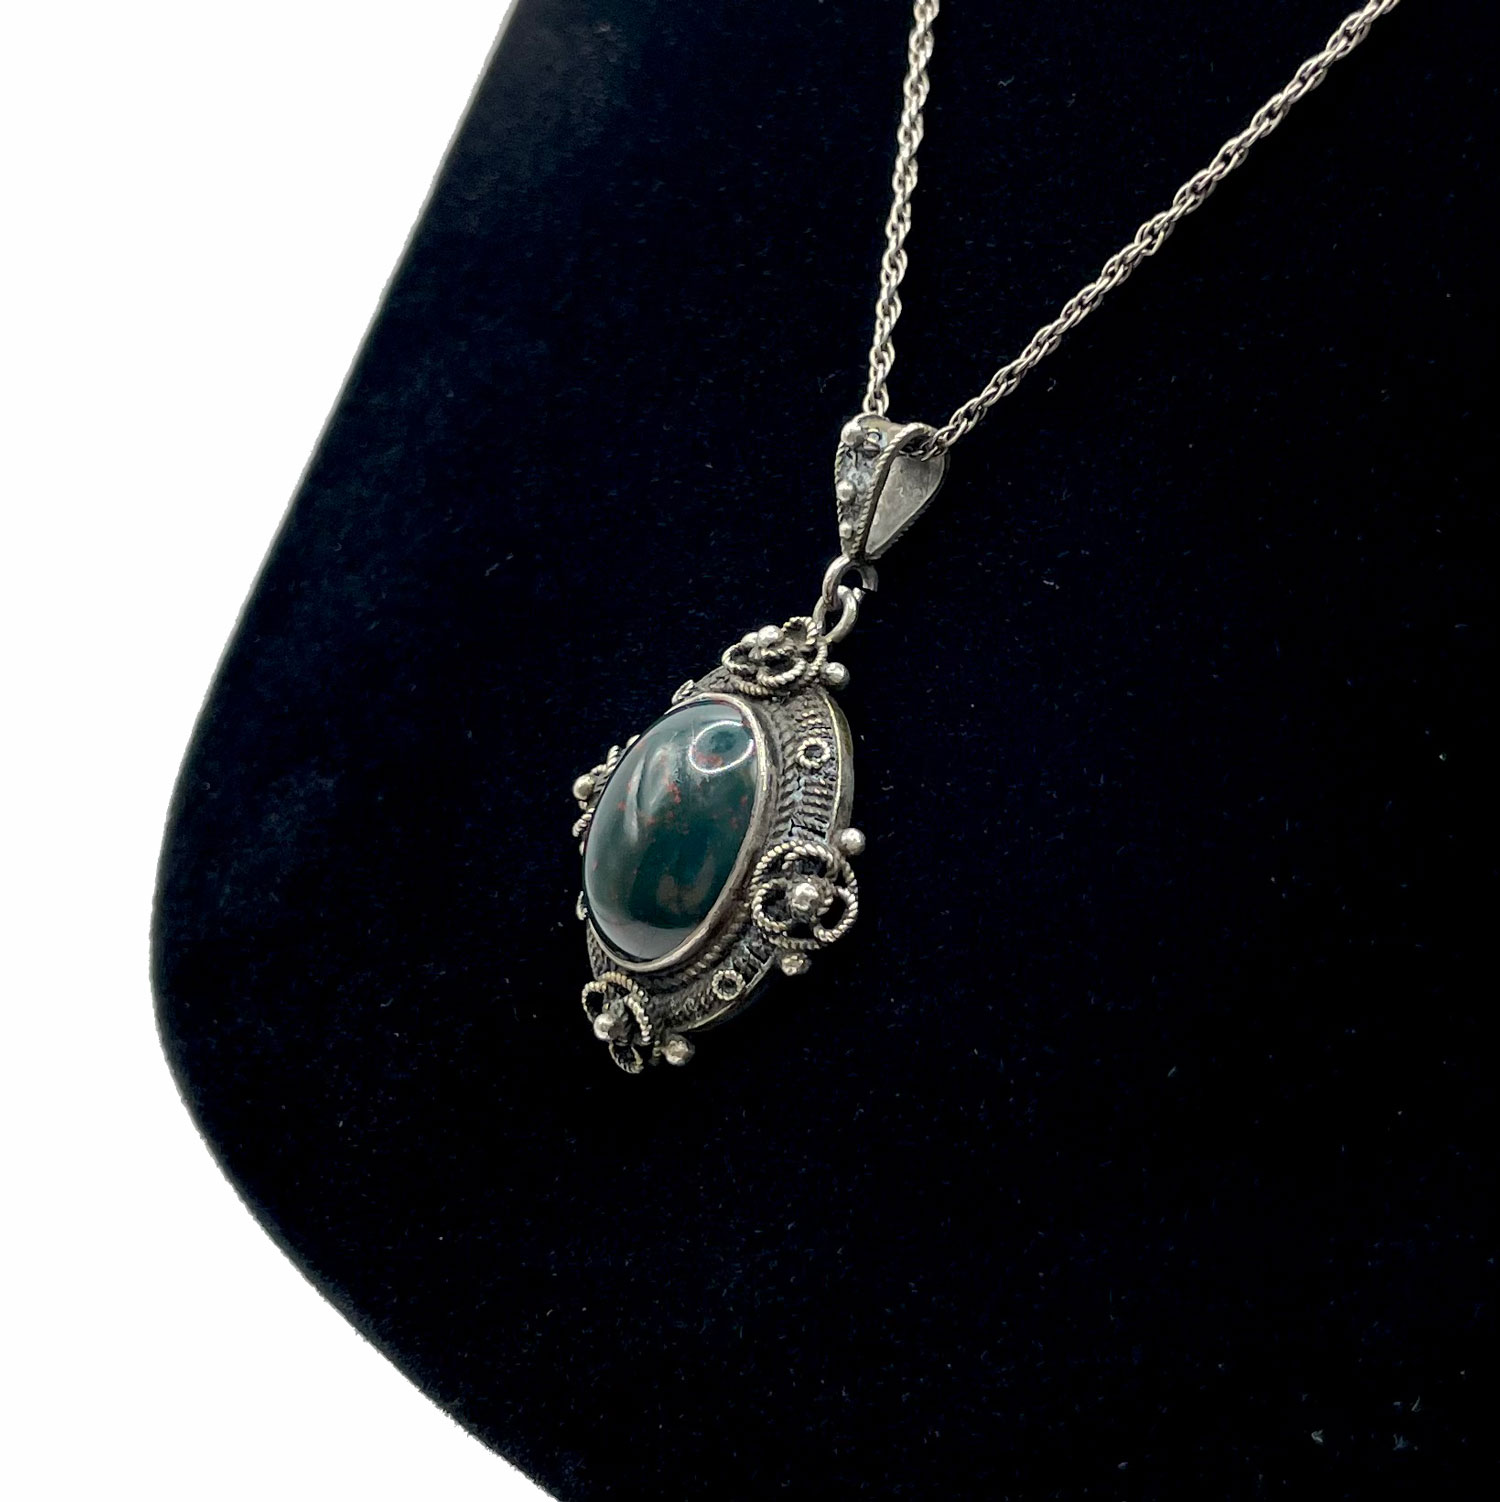 Vintage bloodstone pendant necklace